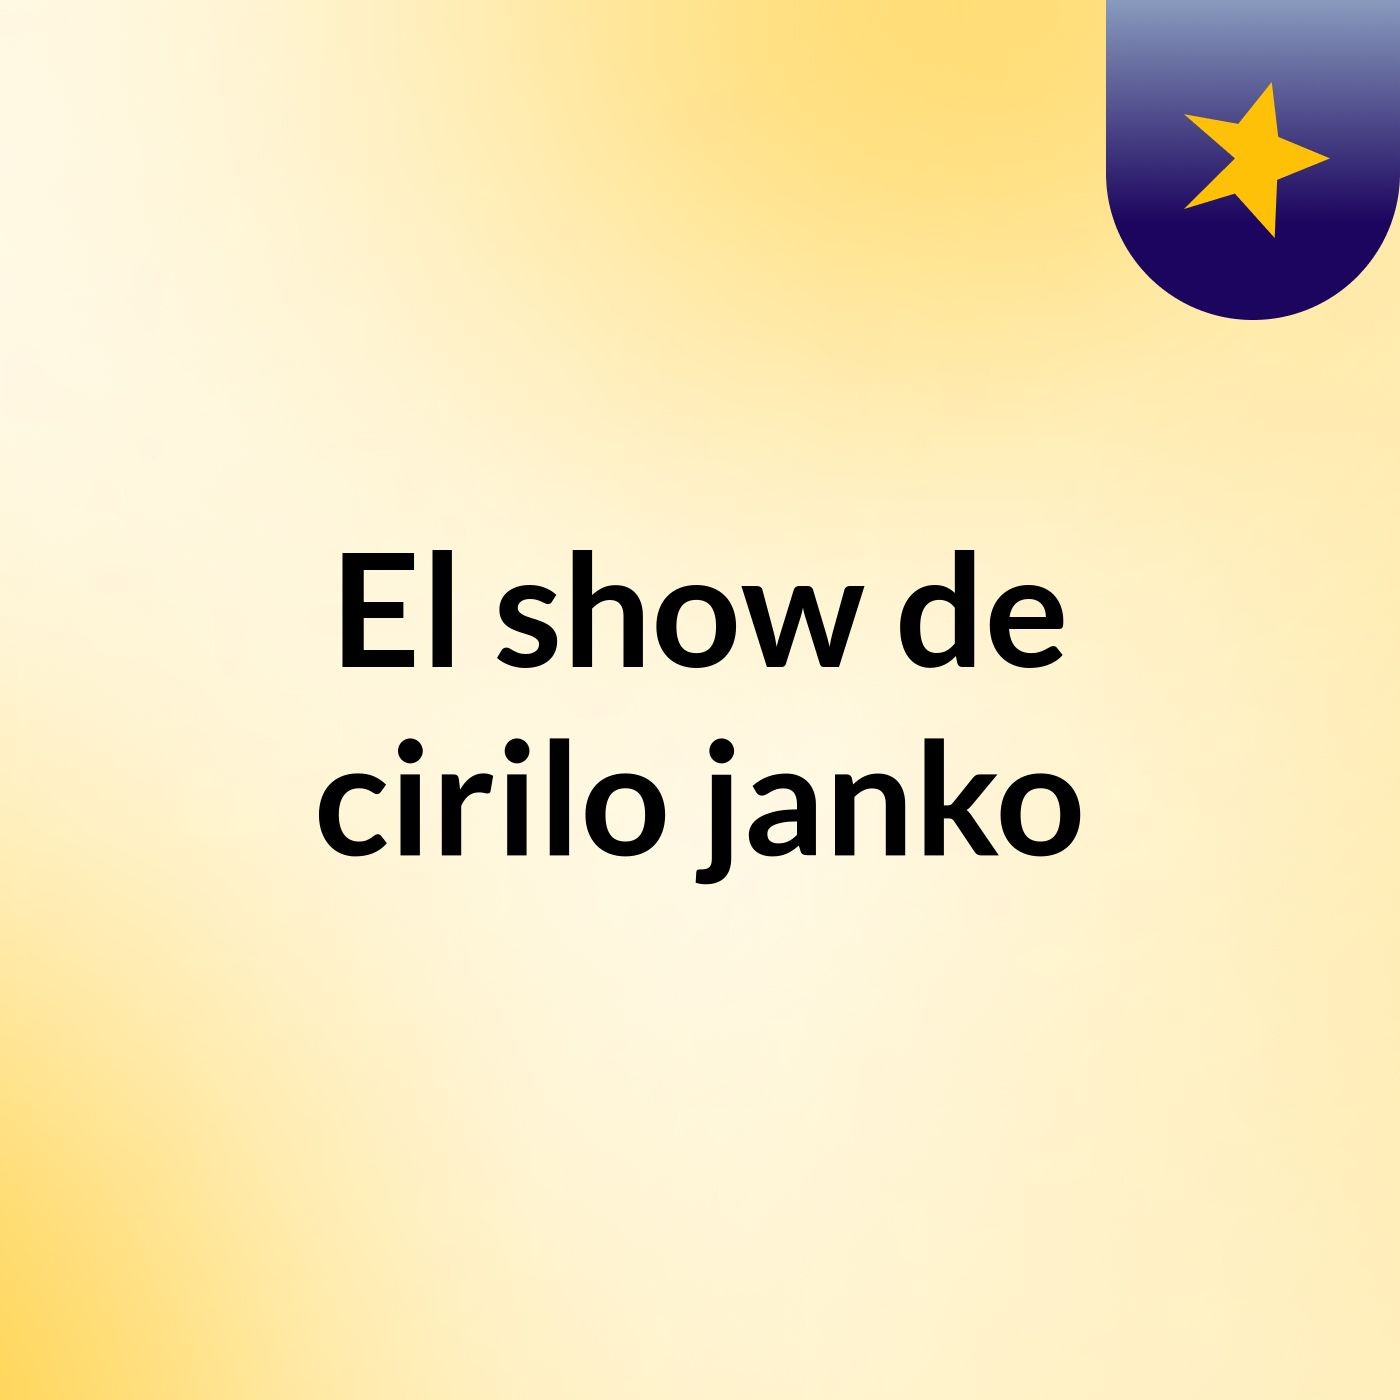 El show de cirilo janko